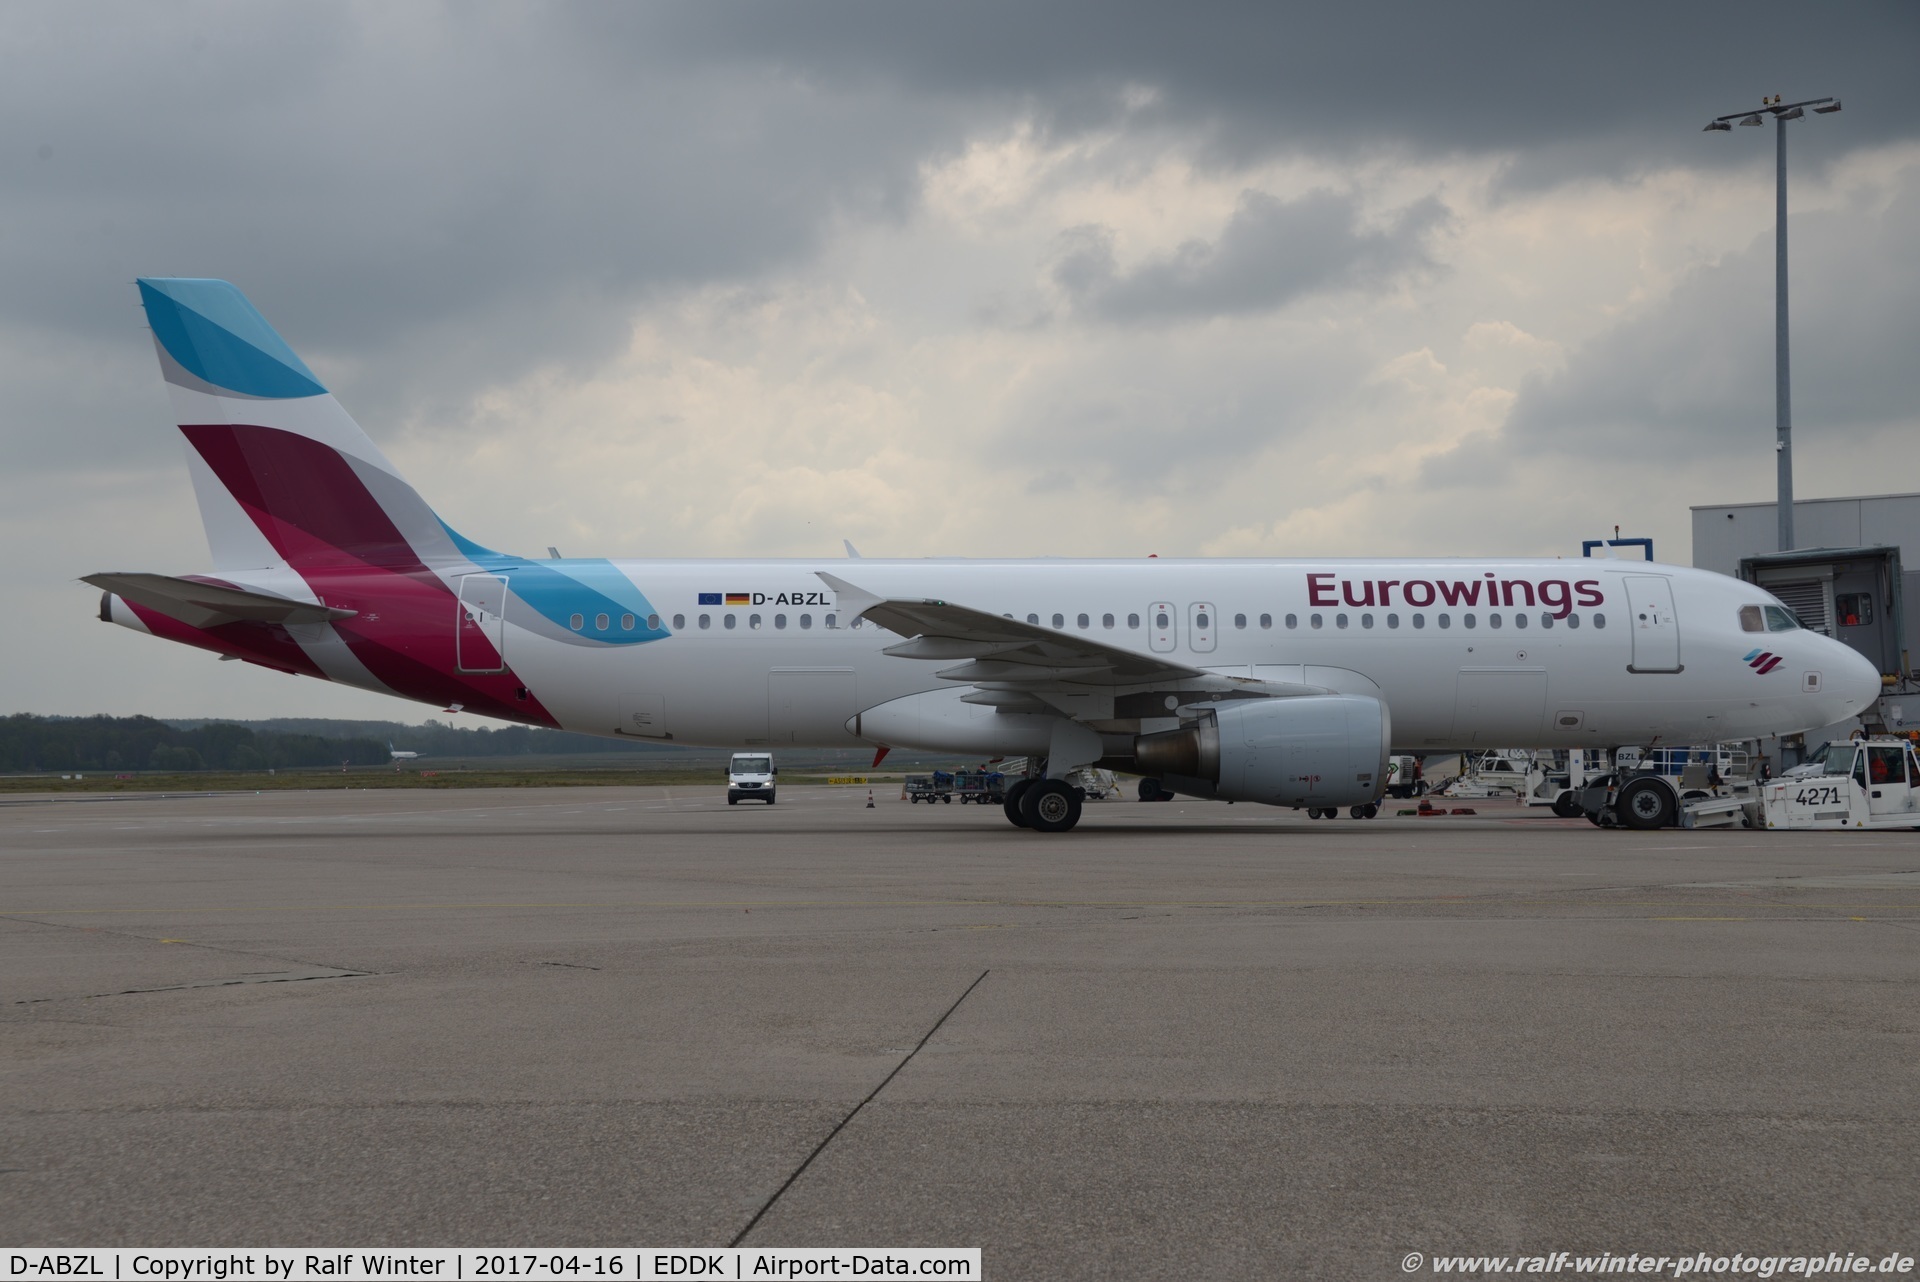 D-ABZL, 2007 Airbus A320-216 C/N 3178, Airbus A320-216 - EW EWG Eurowings ex Air Berlin - 3178 - D-ABZL - 16.04.2017 - CGN